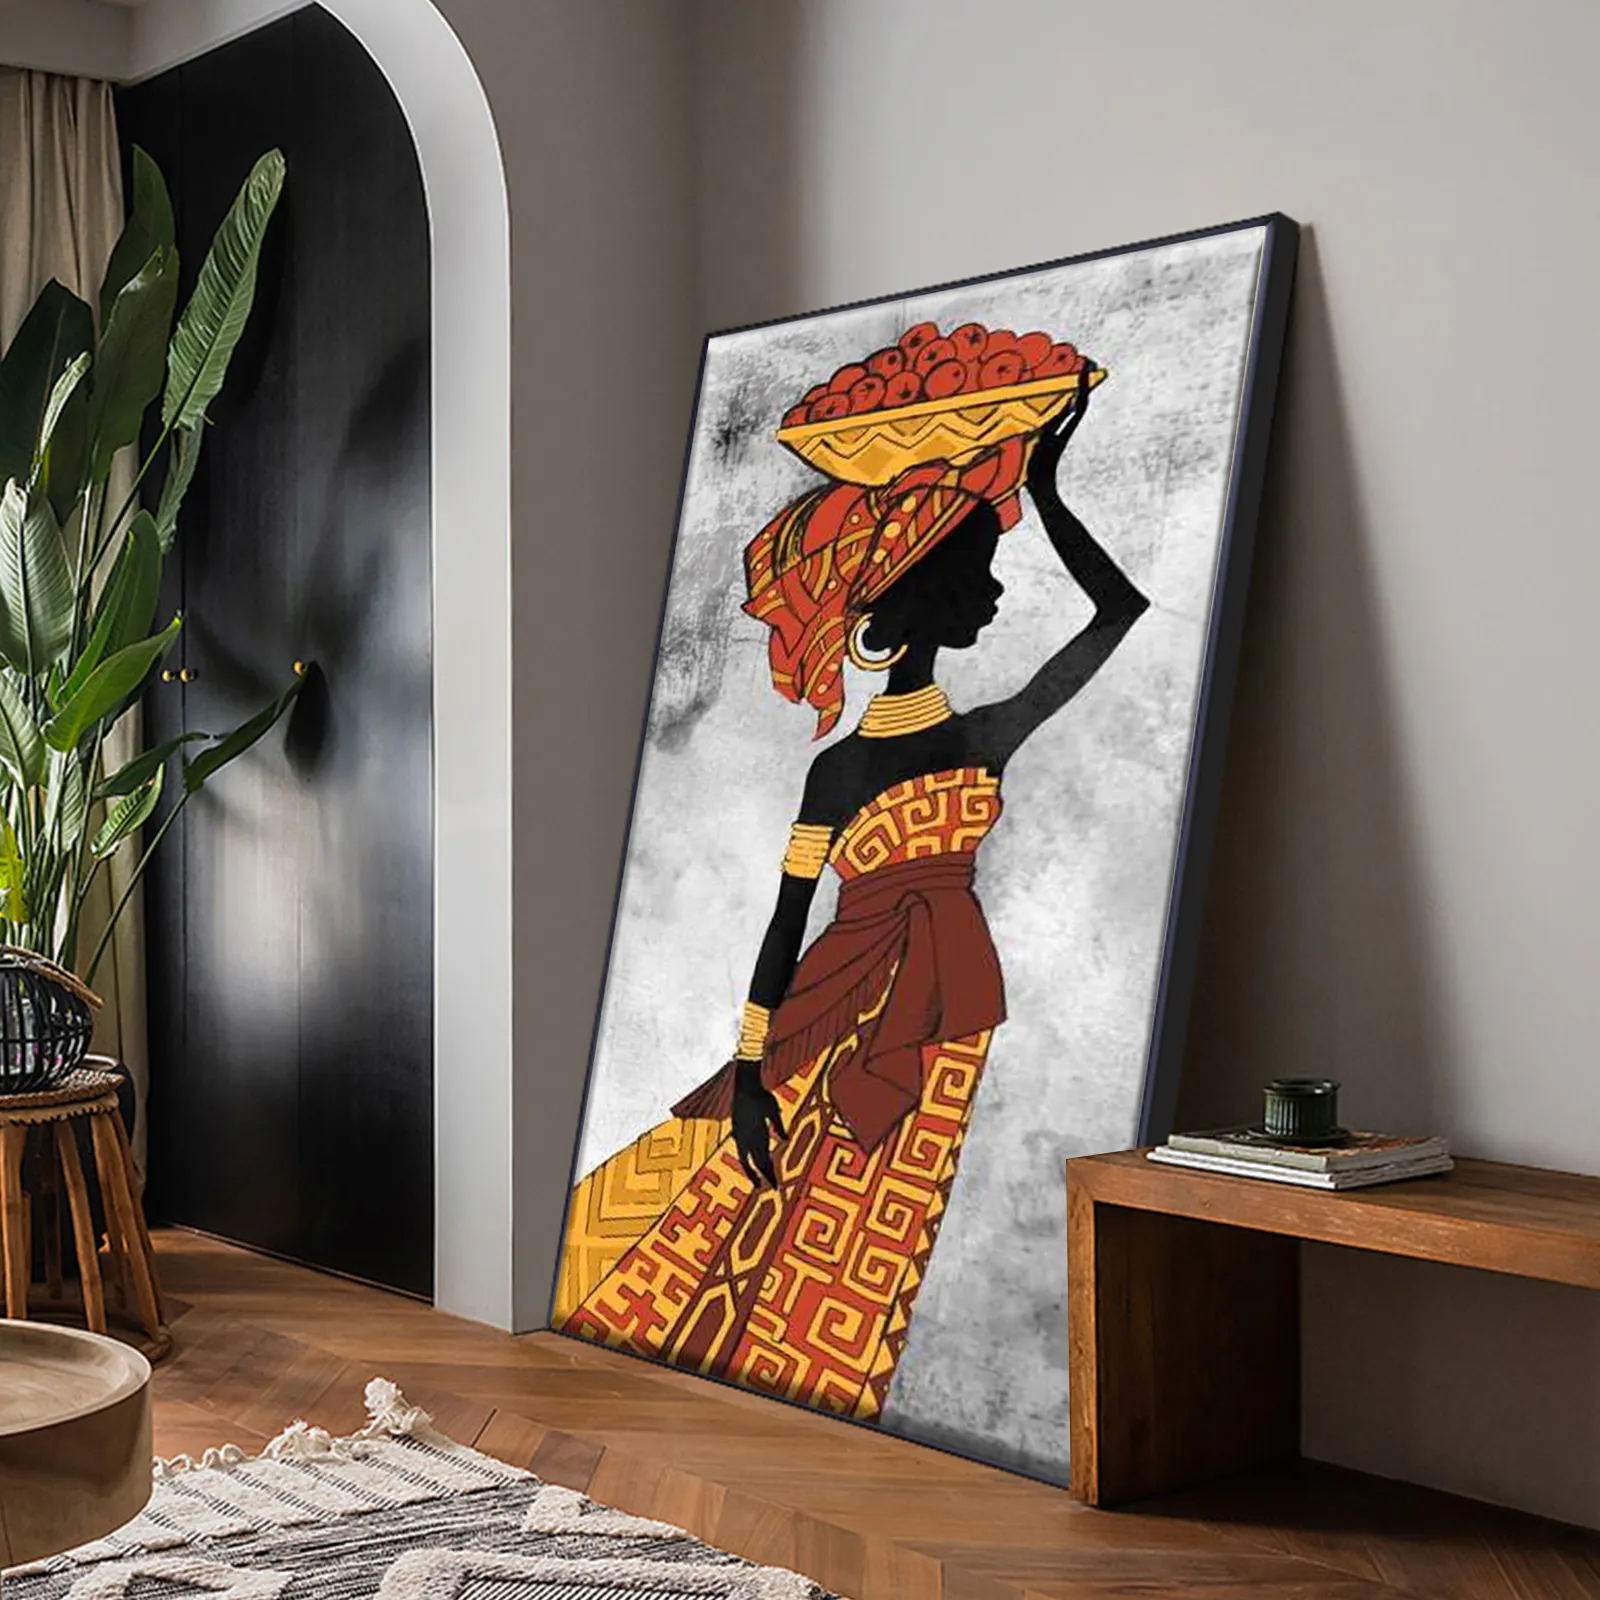 Peintures d'art tribal Etnicos africains, affiche de danse de femmes noires, peinture sur toile imprimée, tableau d'art abstrait pour décoration murale de maison 7785728